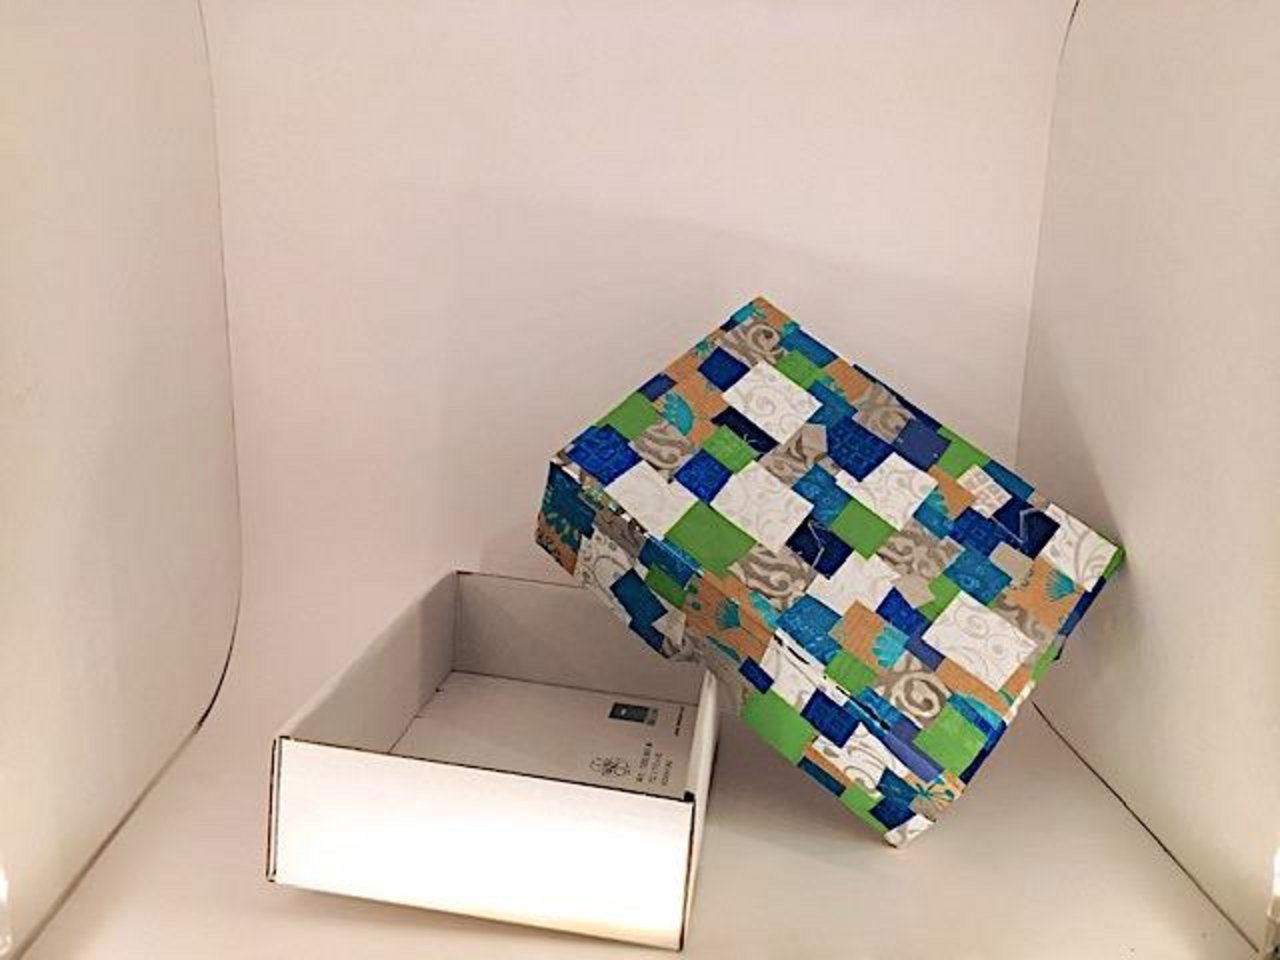 Resten von sechs verschiedenen Packpapier-Rollen machen die Kartonschachtel zur Mosaik-Truhe. (Bilder jsc)